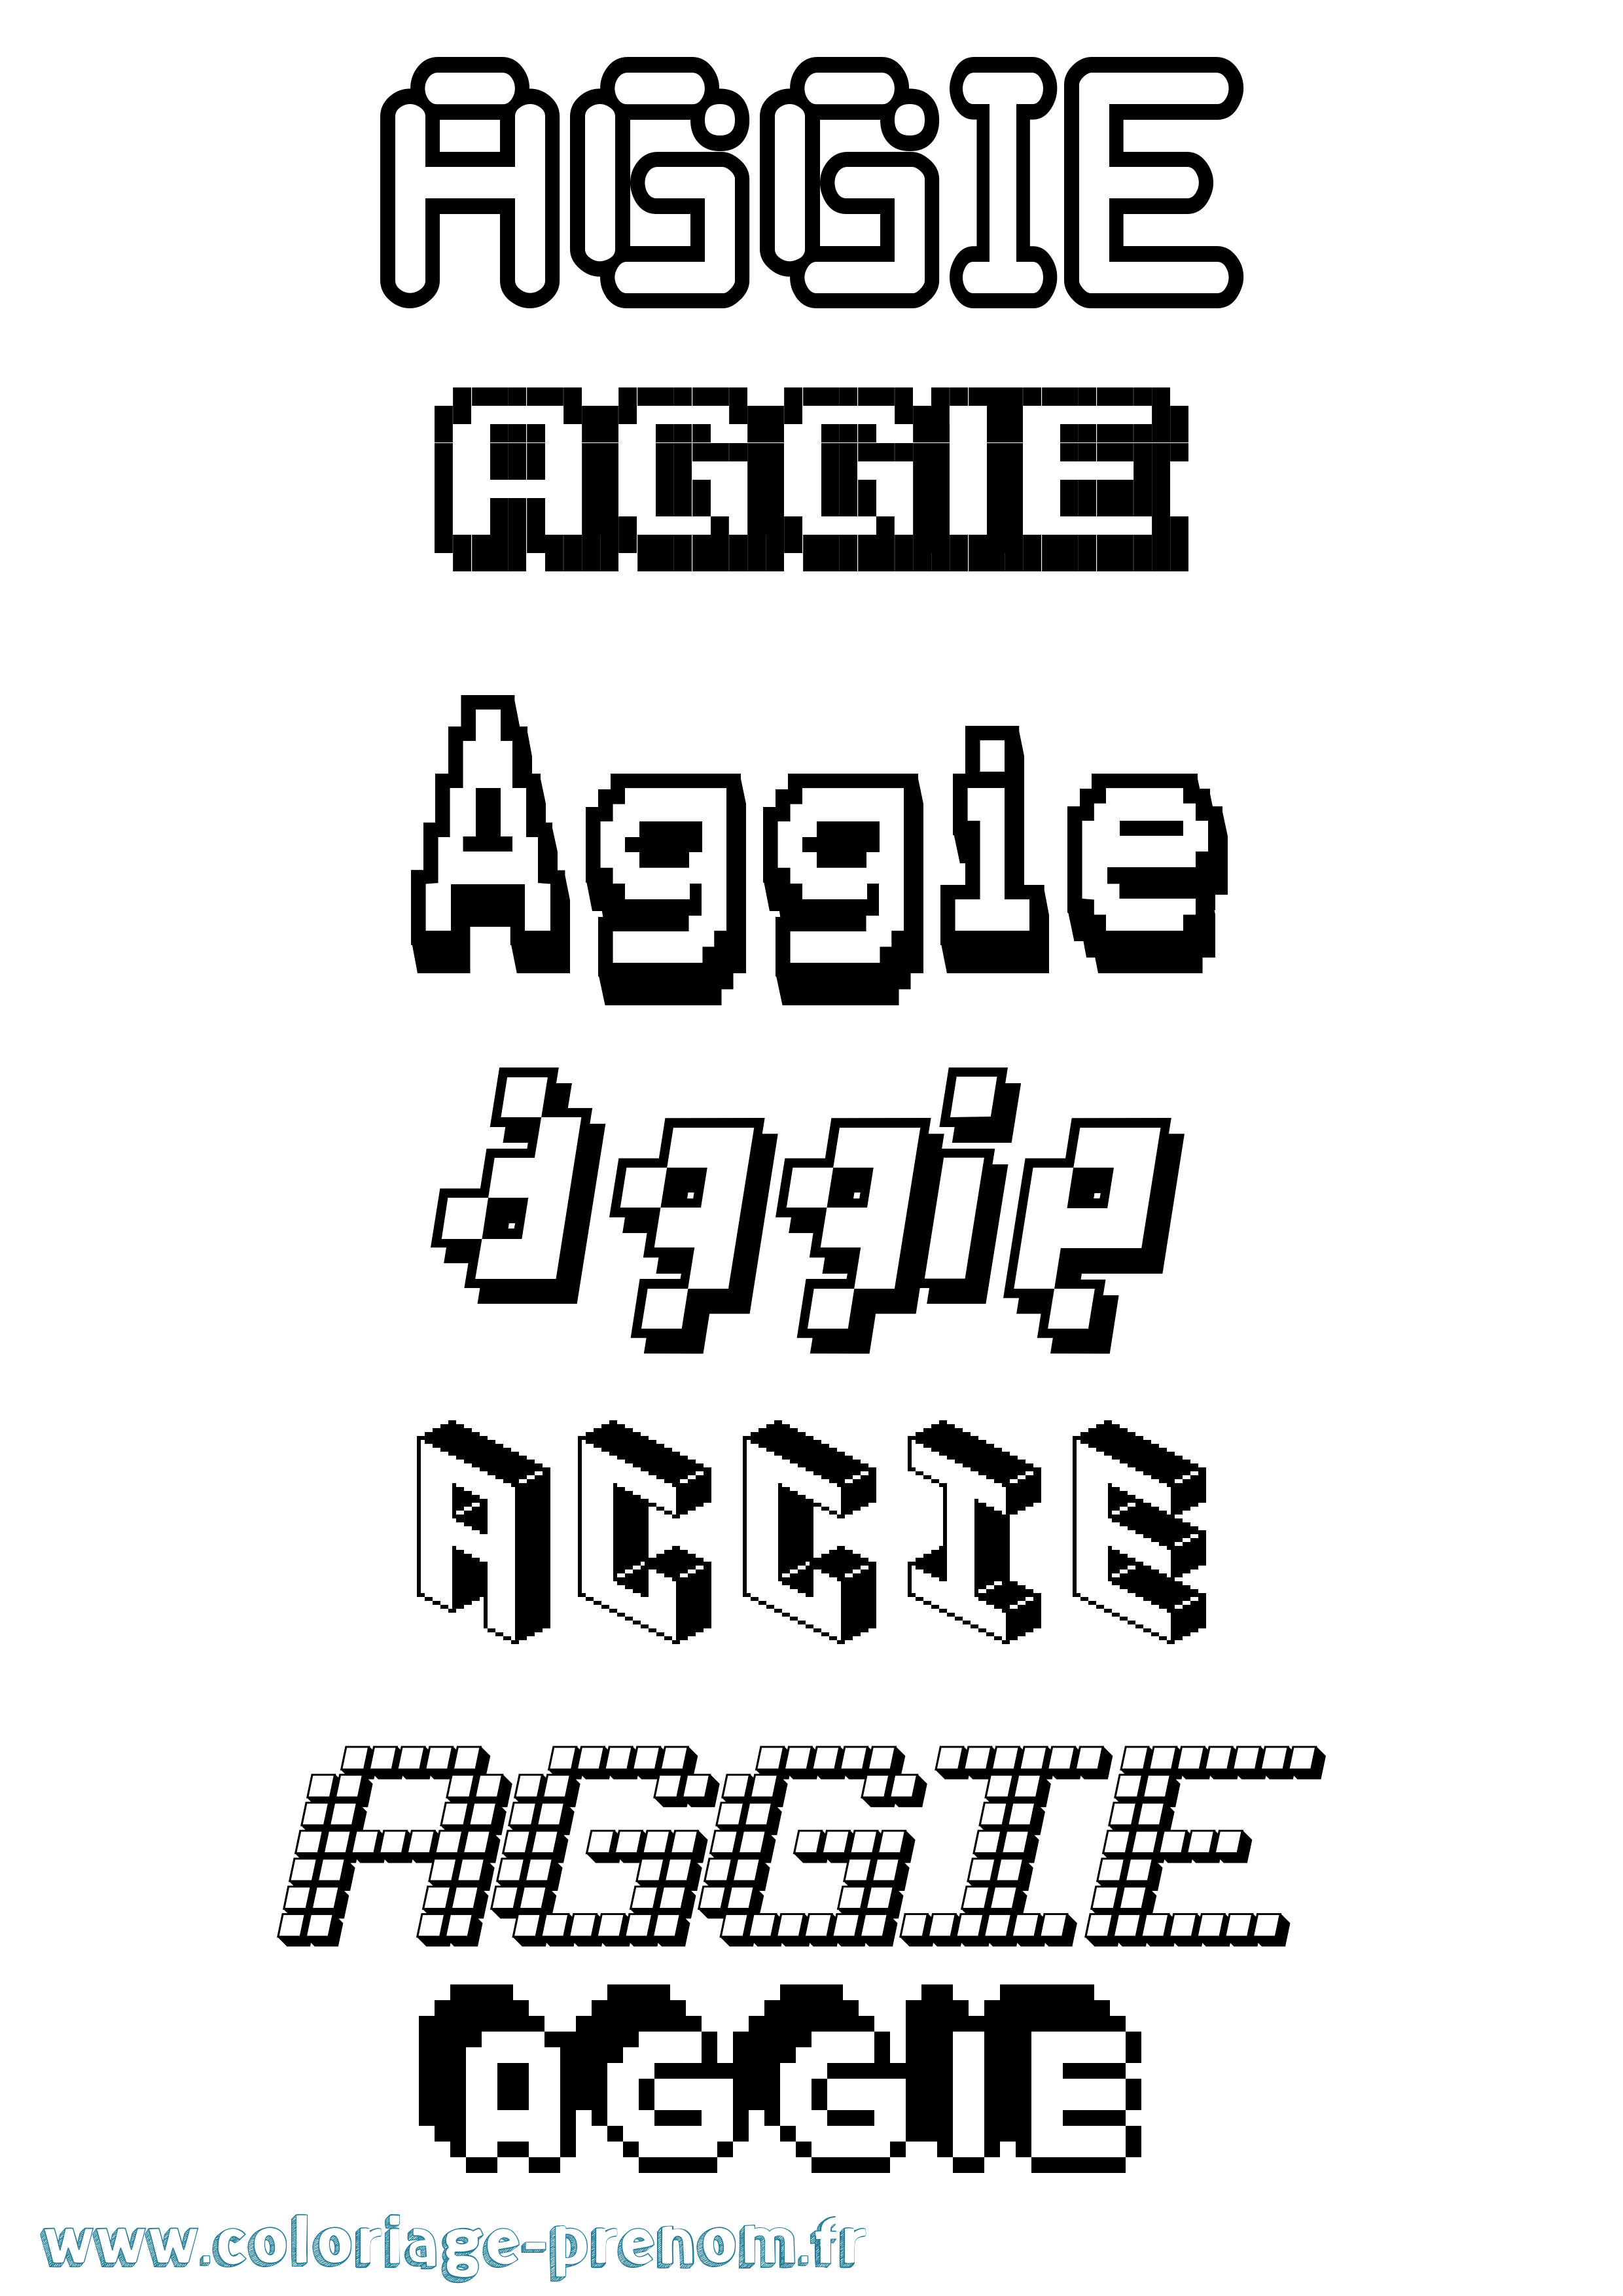 Coloriage prénom Aggie Pixel